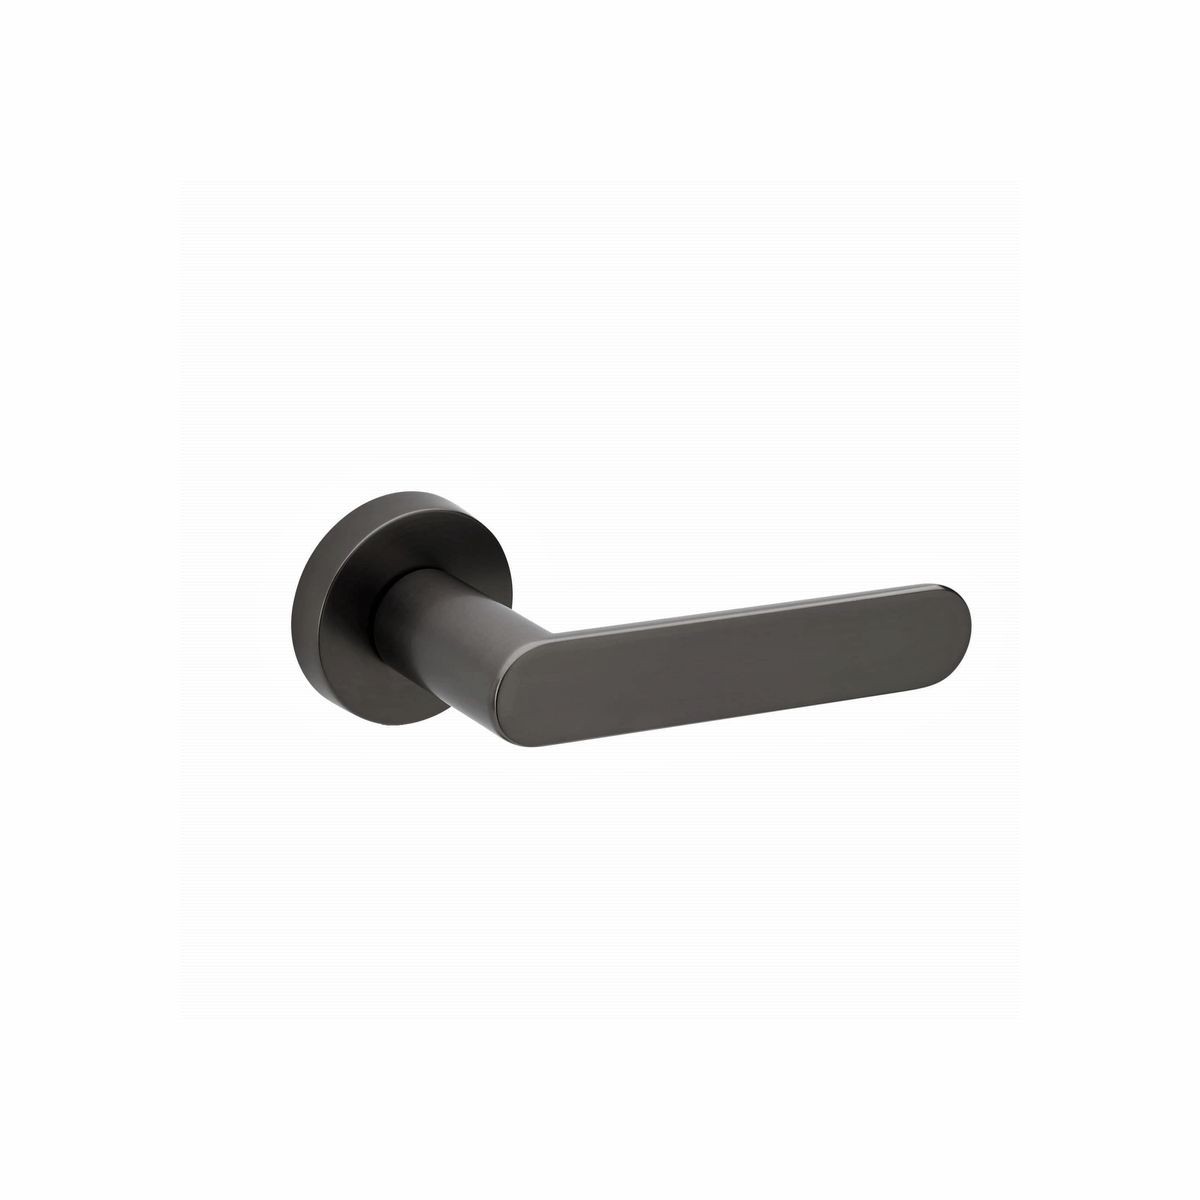 Brushed Brass Door Handle PRIVACY- Mucheln BERKLEY Series – Mucheln Door  Hardware